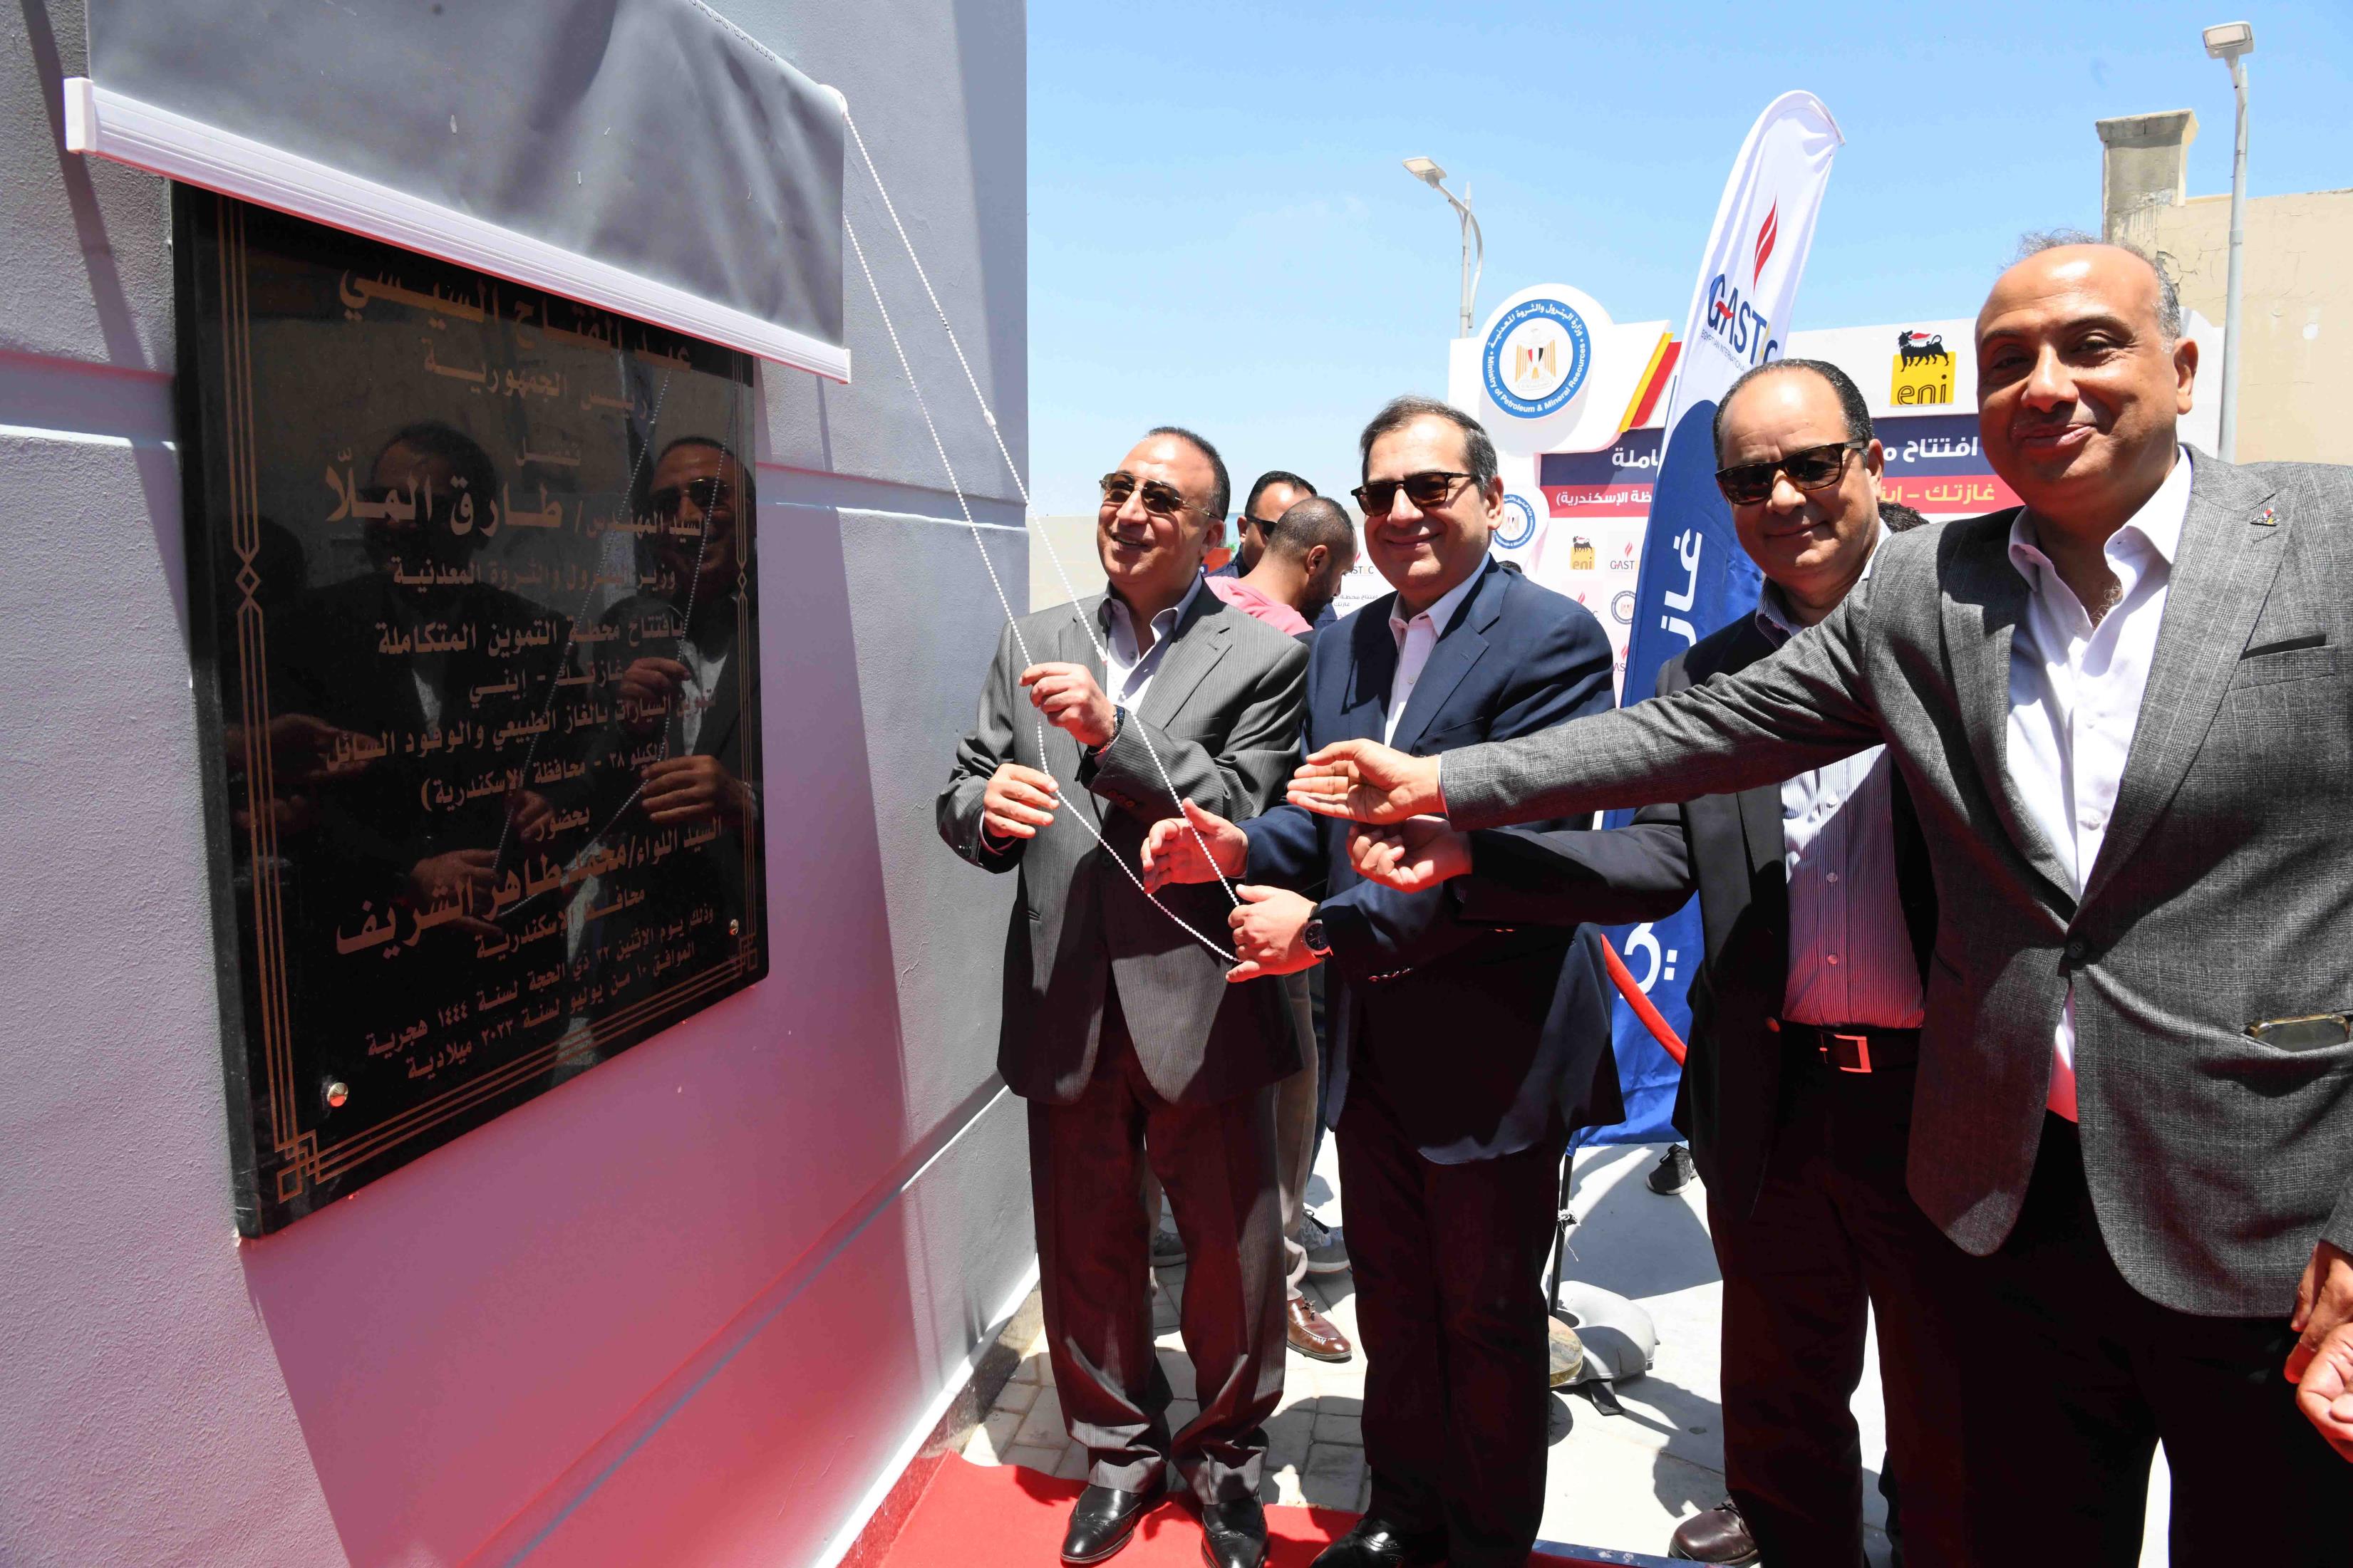  (أغسطس ٢٠٢٣)افتتاح محطة غازتك-ايني المتكاملة بالأسكندرية